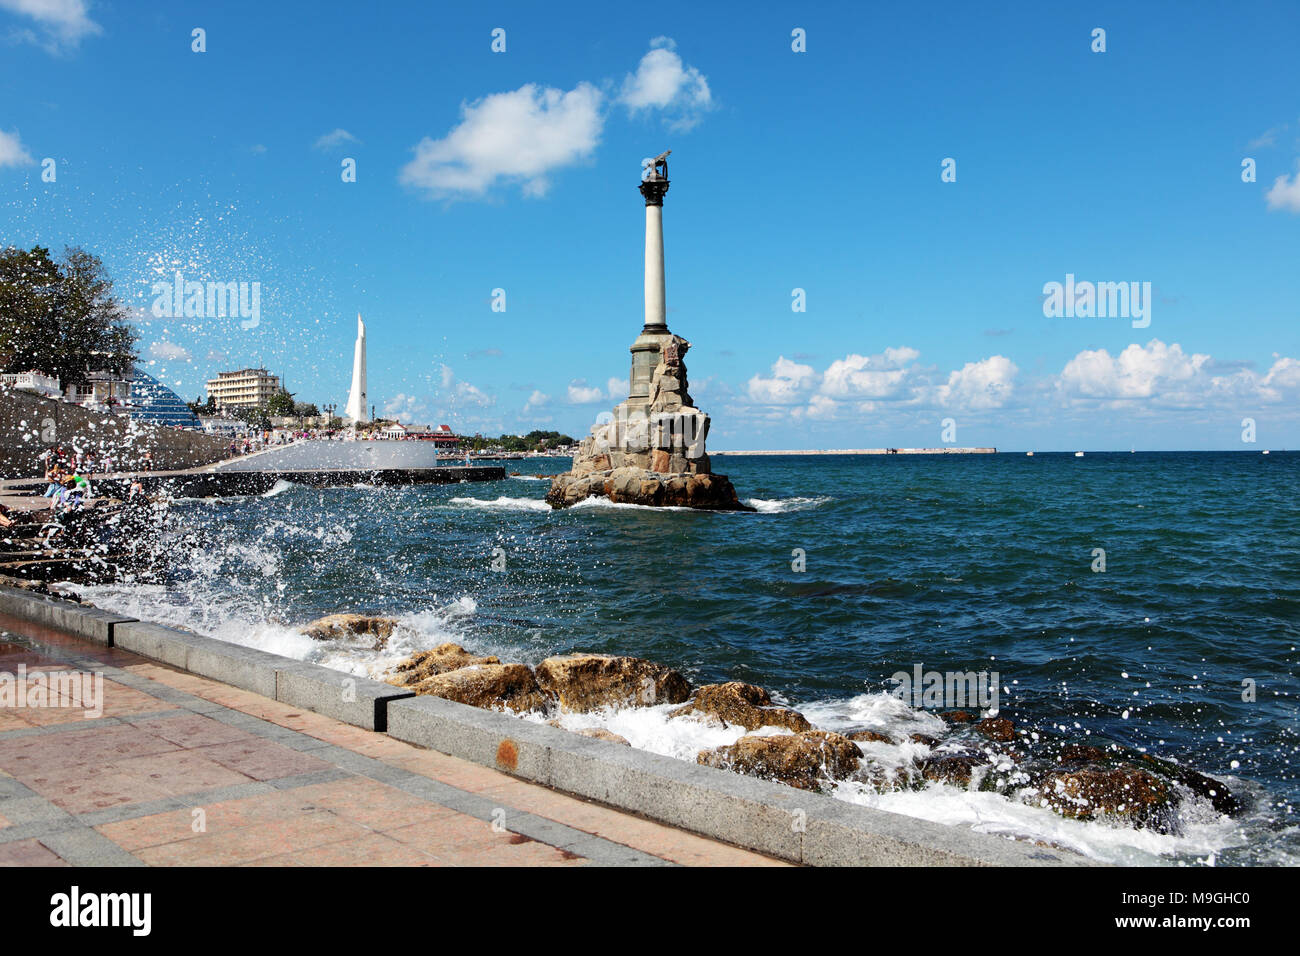 Sebastopol, la Crimea, Ucrania - Agosto 17, 2012: la gente en el terraplén frente al monumento a los saboteado los buques de guerra. El monumento fue construido en 1 Foto de stock